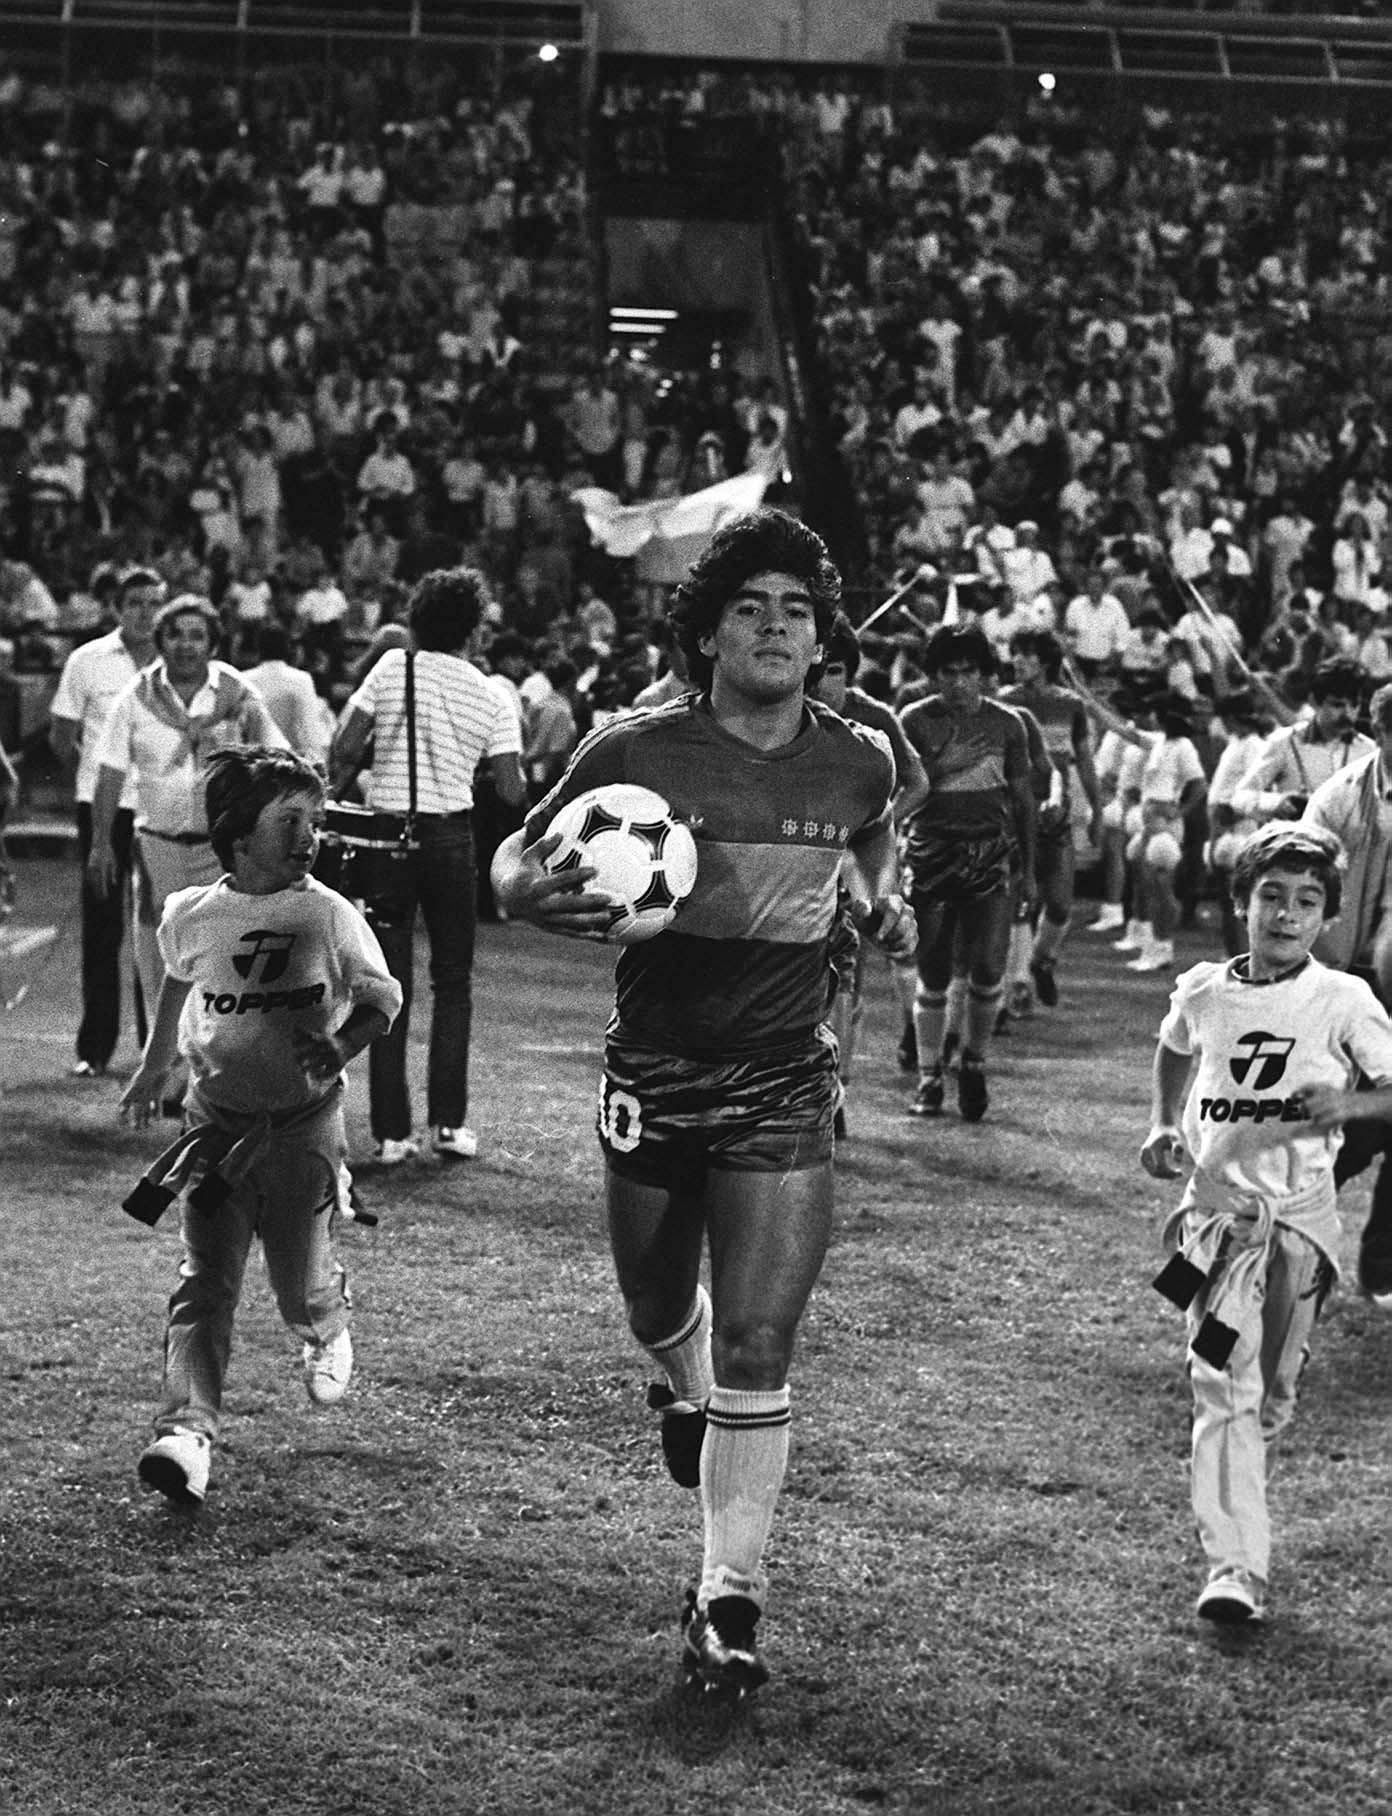 Maradona entrando a la Cancha. Diego maradona, Fotos de fútbol, Carteles de fútbol